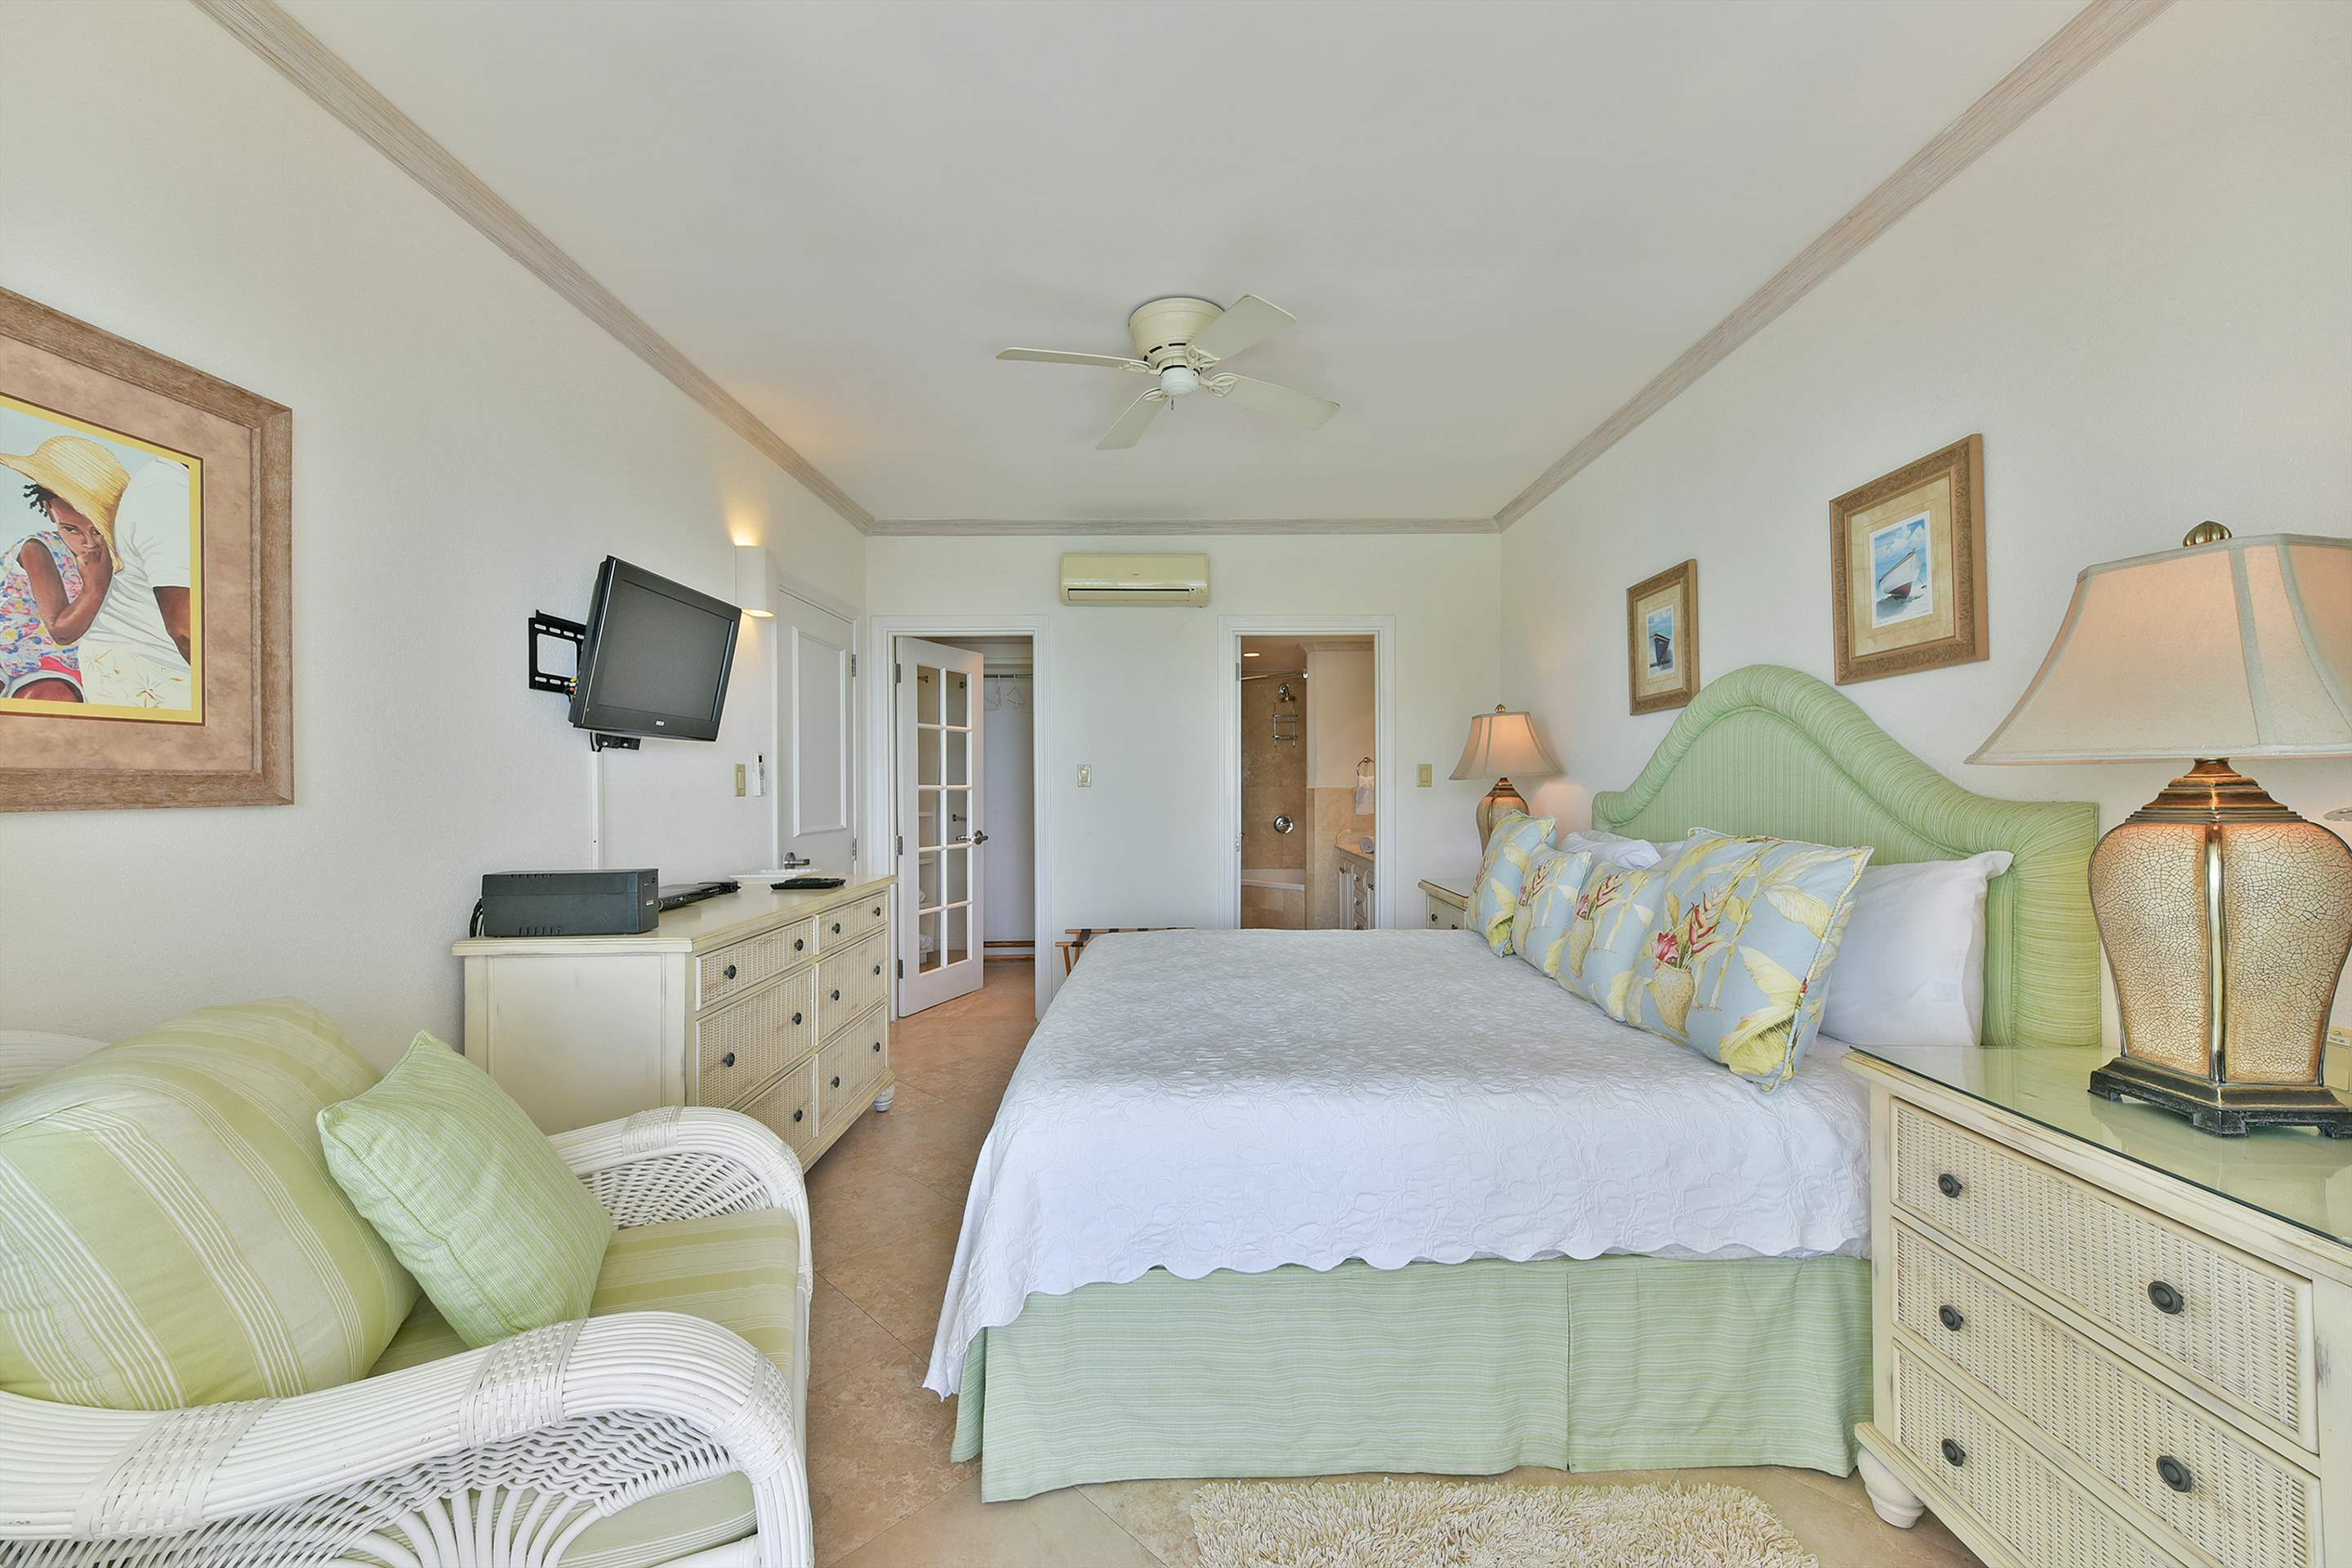 Maxwell Beach Villas 302, 2 bedroom, 2 bedroom apartment in St. Lawrence Gap & South Coast, Barbados Photo #14